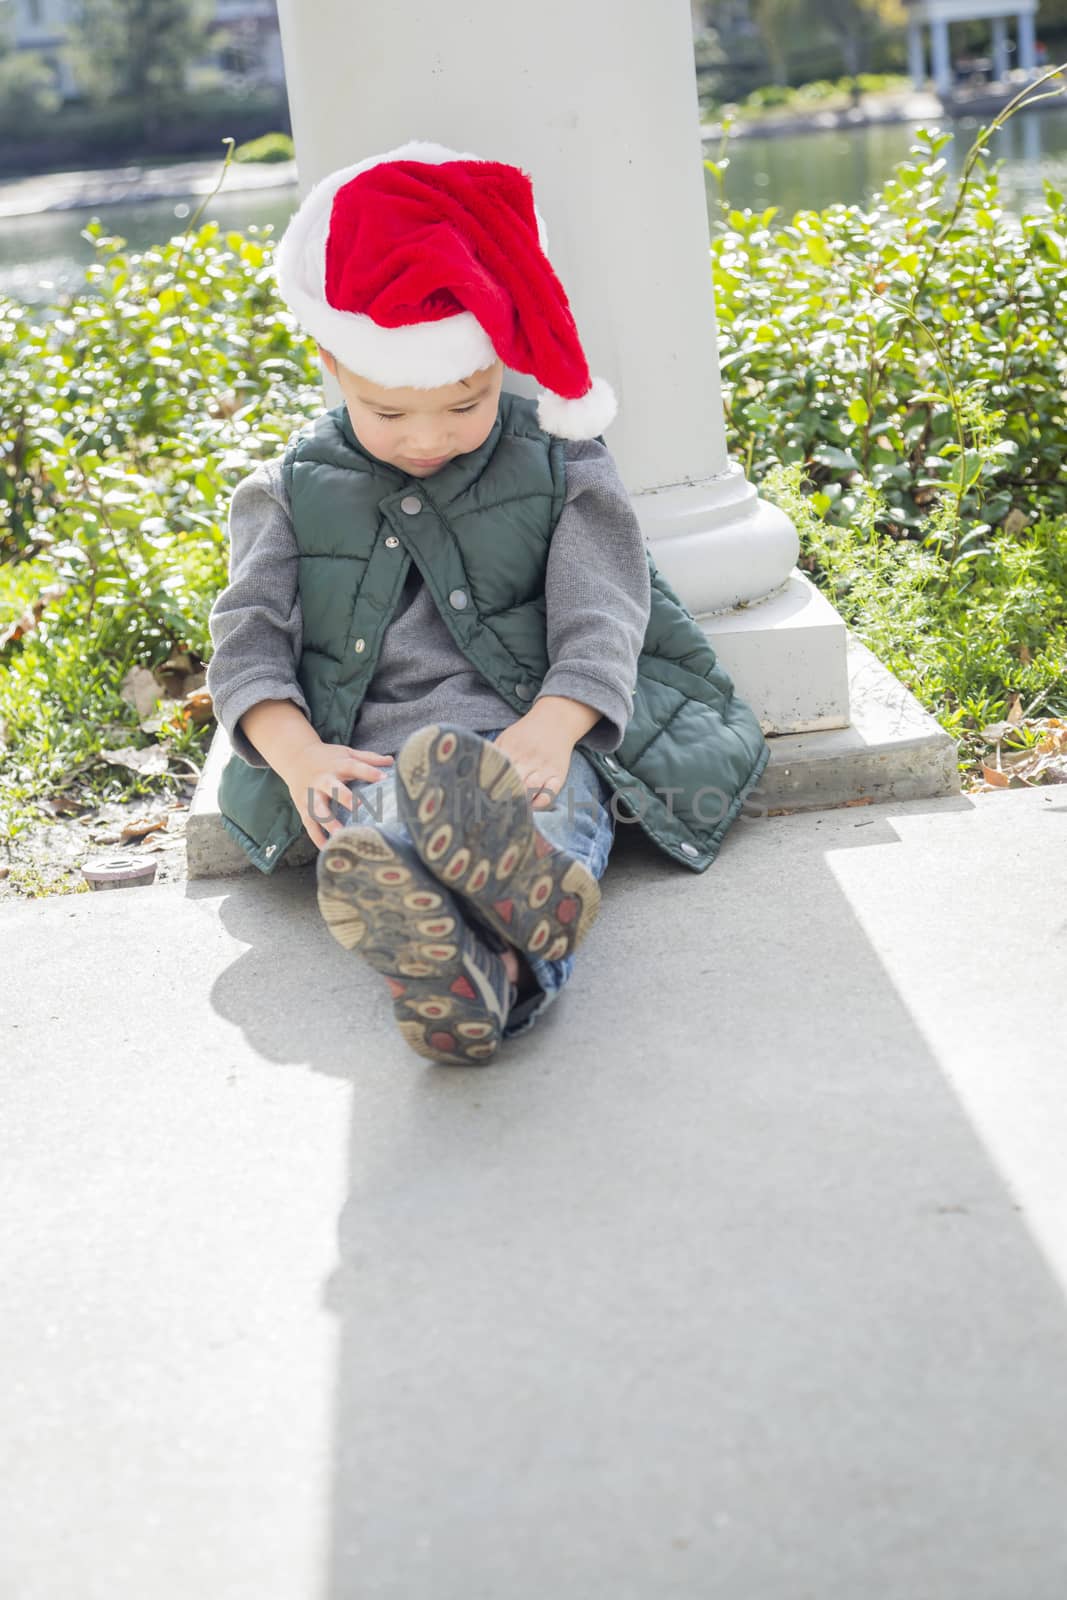 Melancholy Mixed Race Boy Sitting At The Park Wearing Christmas Santa Hat.